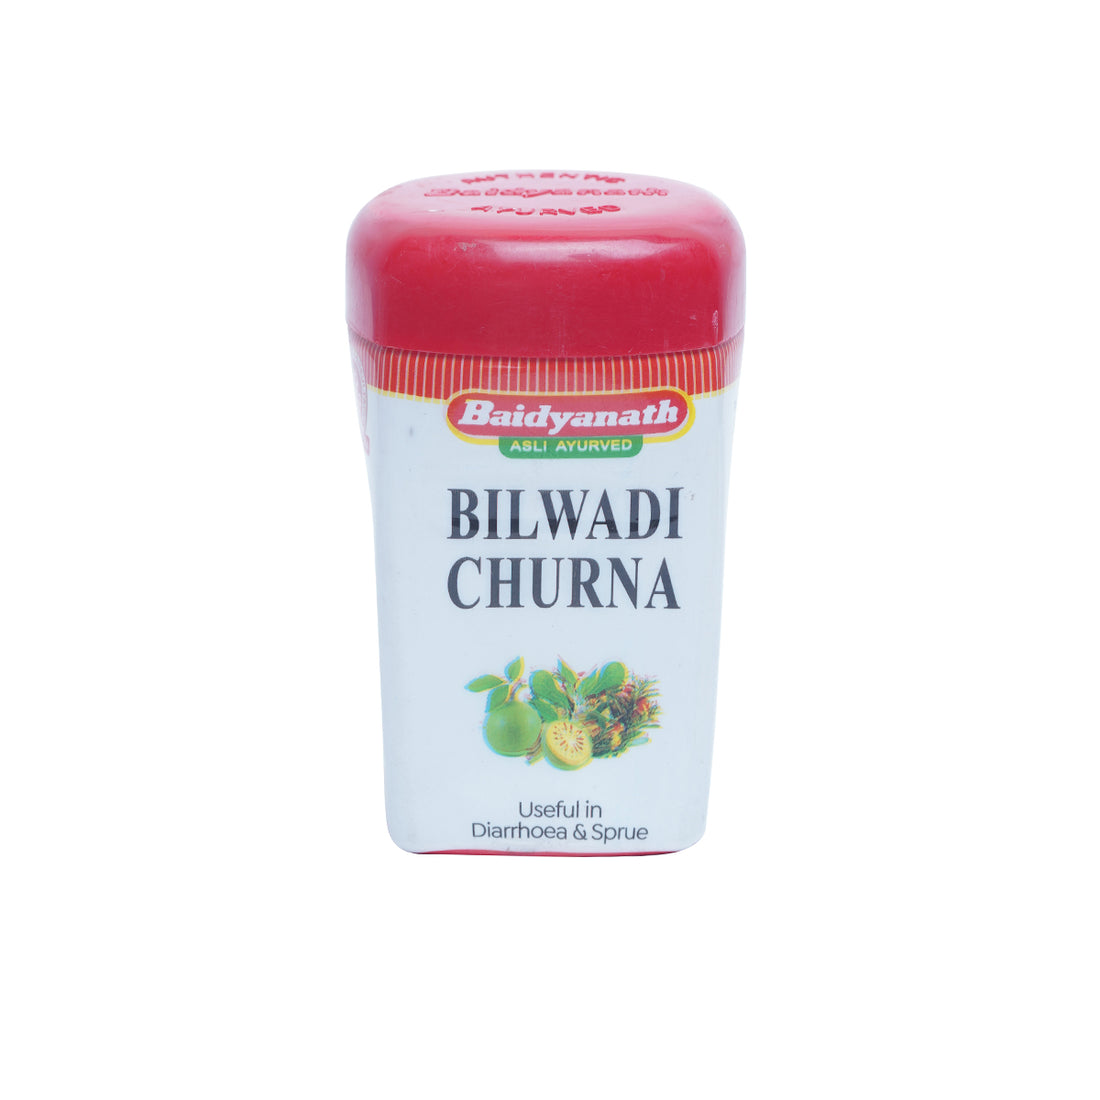 Baidyanath Bilwadi Churna - 60 GM